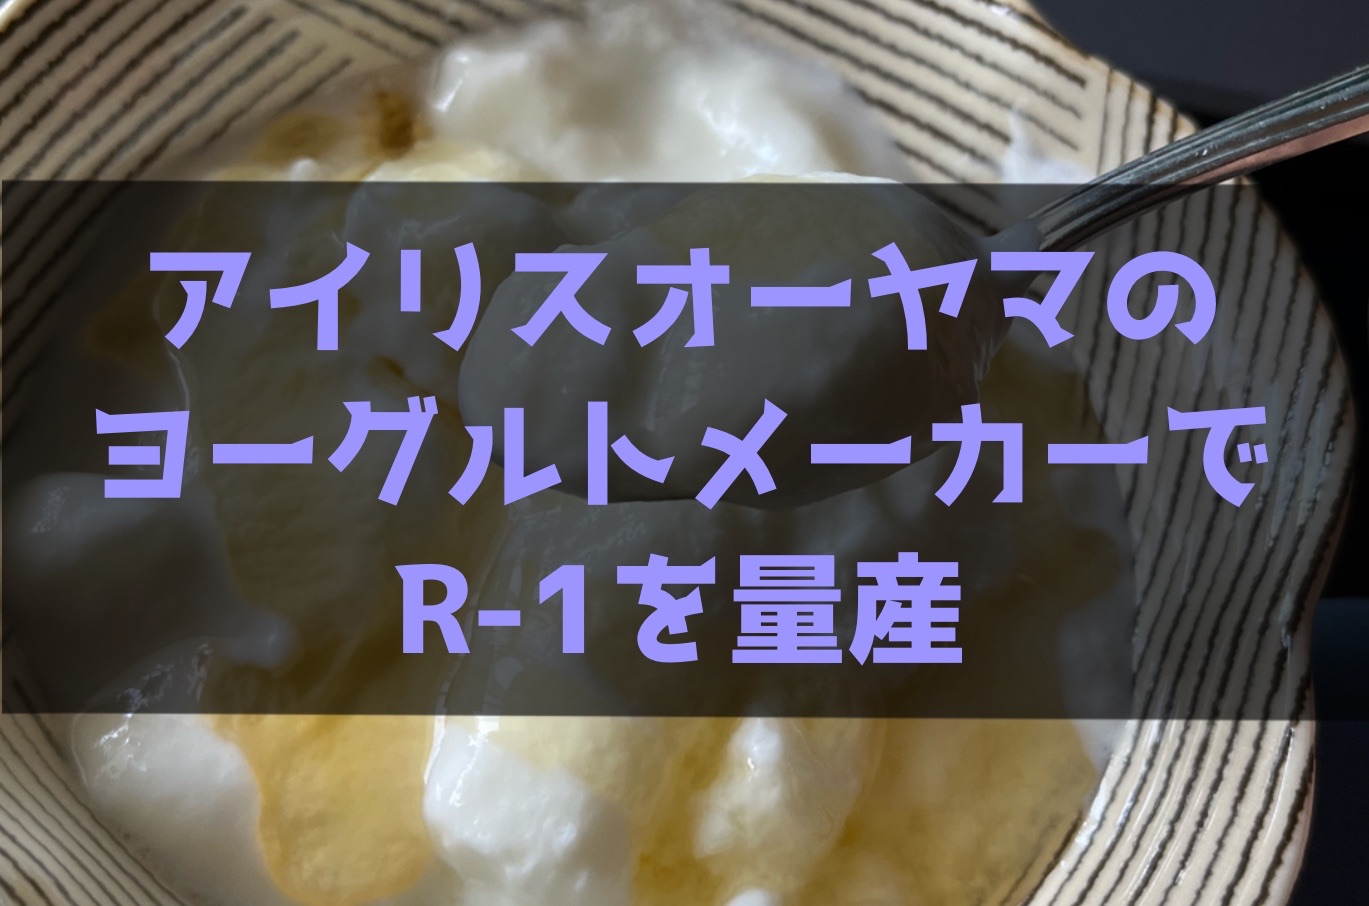 【超節約】アイリスオーヤマのヨーグルトメーカーでR1を量産【レシピあり】